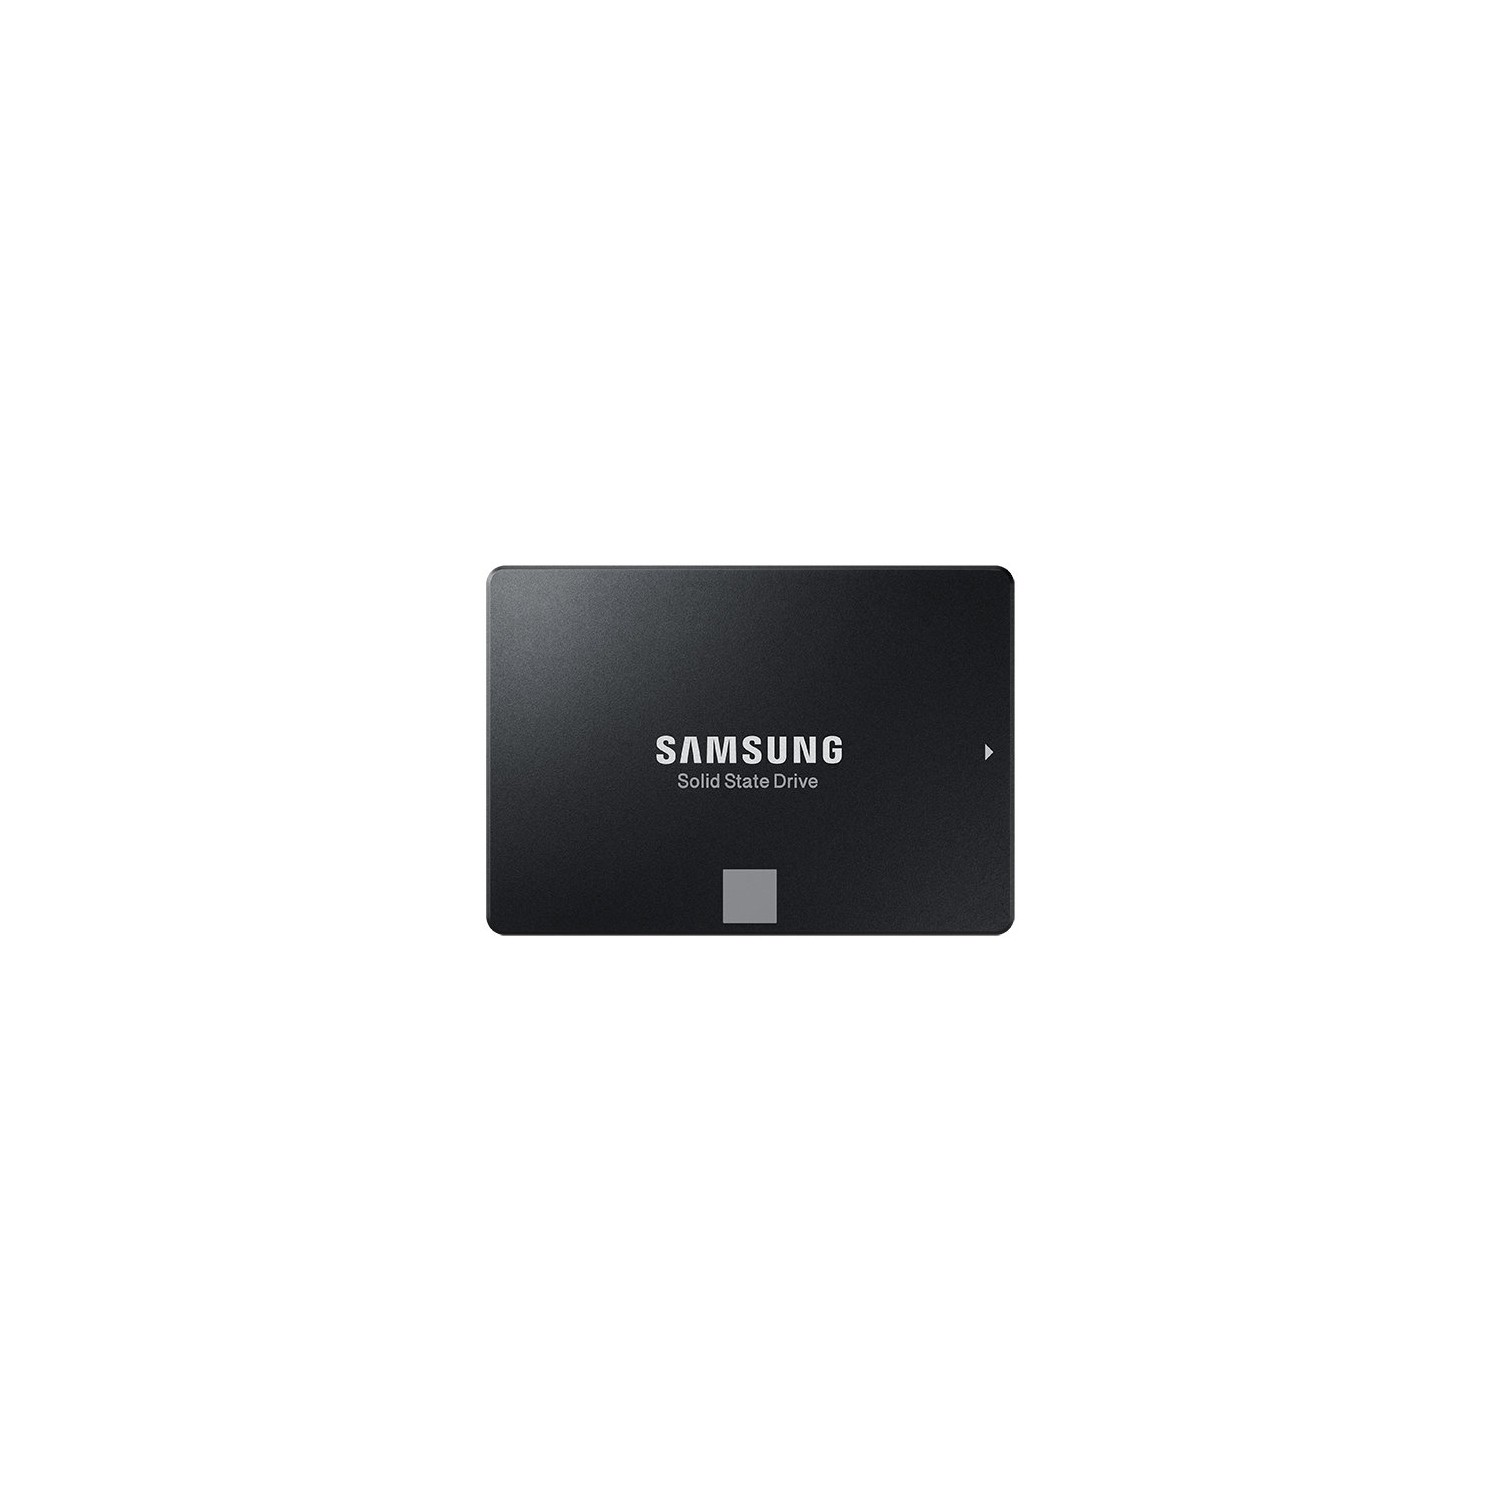 Samsung Solid State Drive 860 EVO 250GB 2.5 SATA3 Internal Single Unit Version White box (MZ-76E250E)